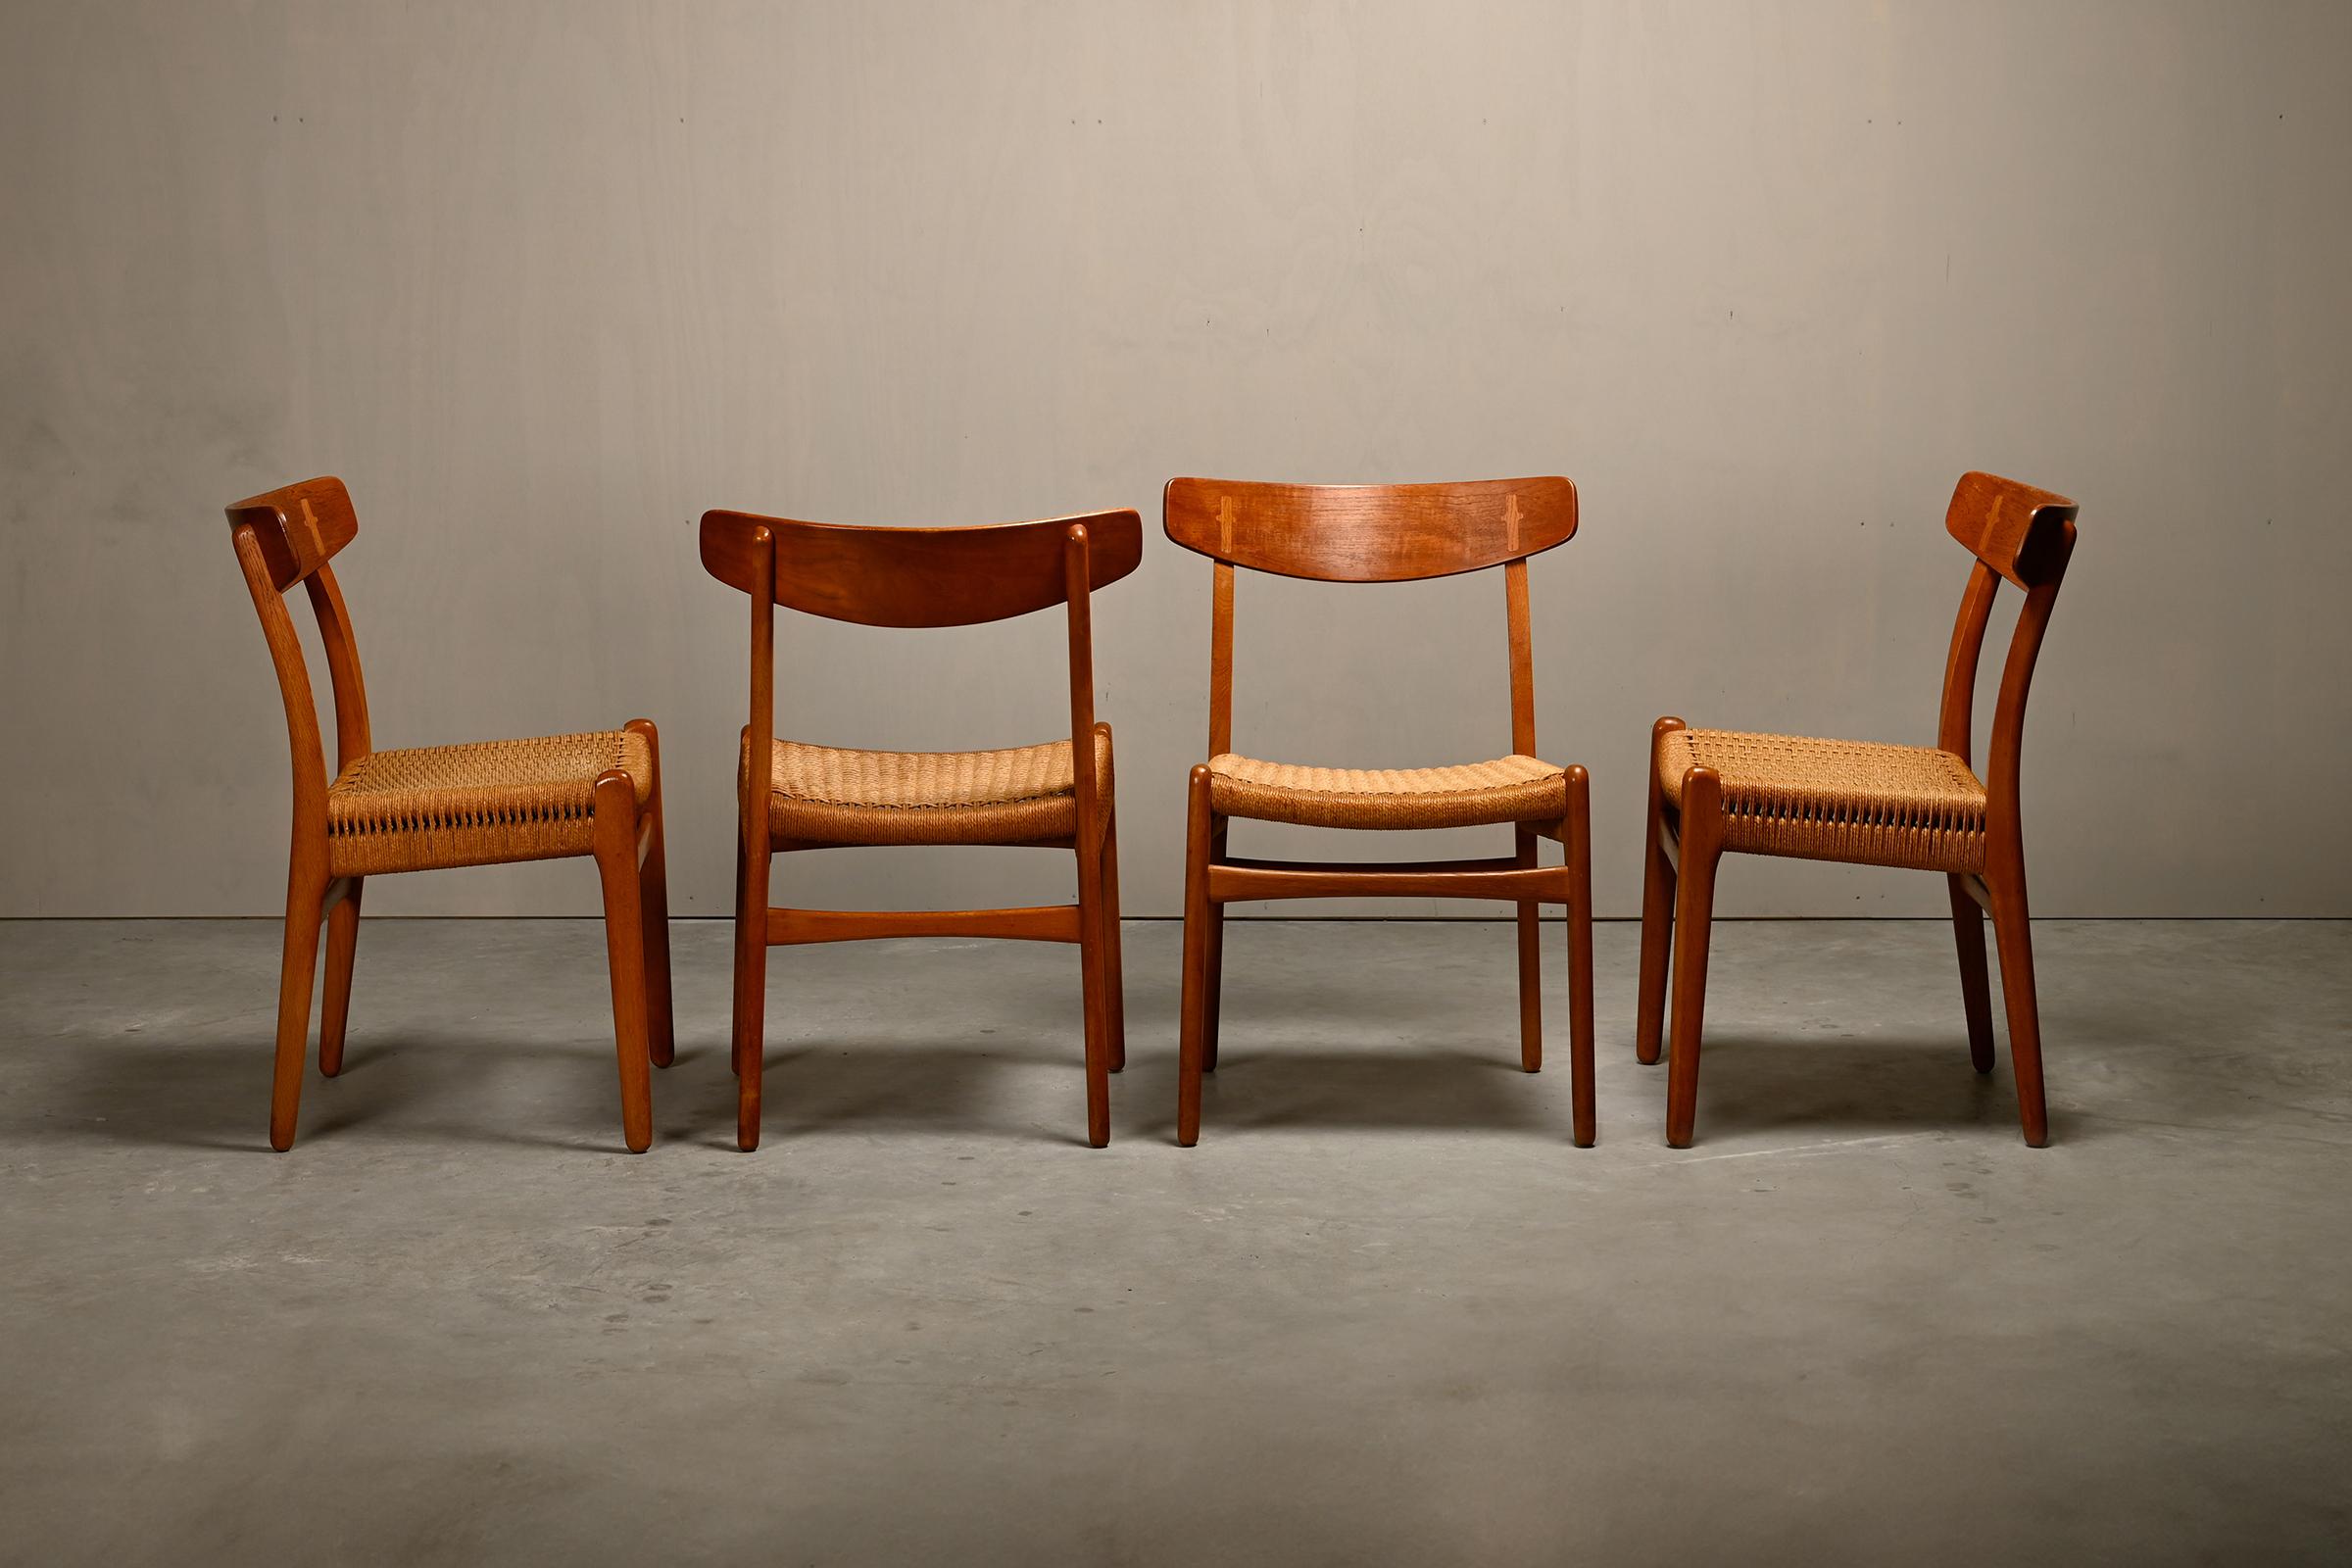 Ensemble de quatre chaises de salle à manger CH23 conçues par Hans J. Wegner pour Carl Hansen & Søn, Danemark, années 1950. Magnifiques et chaleureux cadres en chêne vieilli avec dossiers en teck et sièges en corde de papier tressée à la main. Très